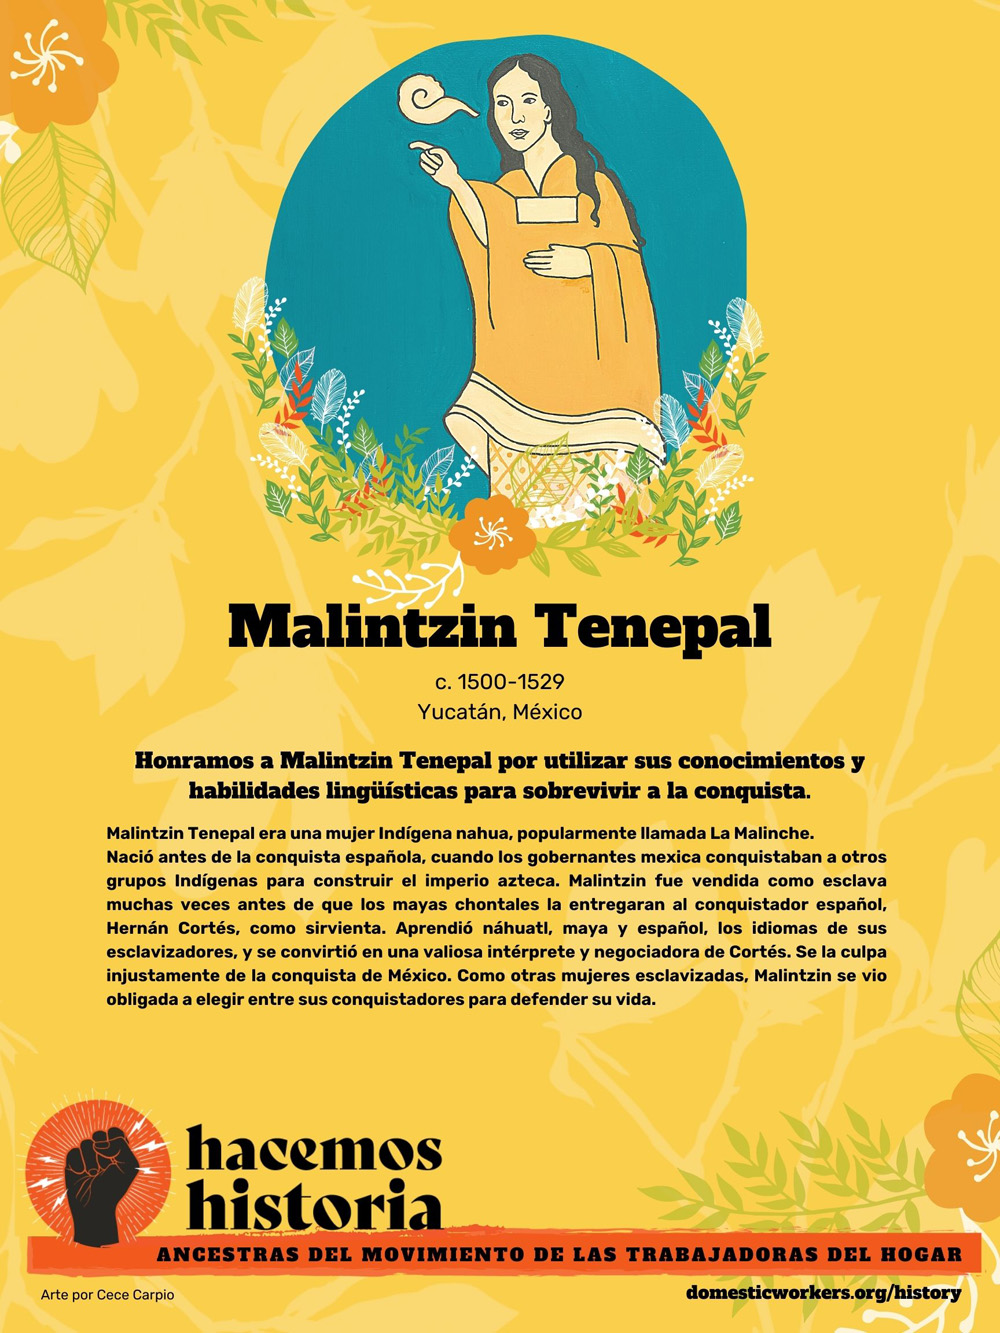 Retratos de las ancestras del movimiento de trabajadoras de hogar: Malintzin Tenepal